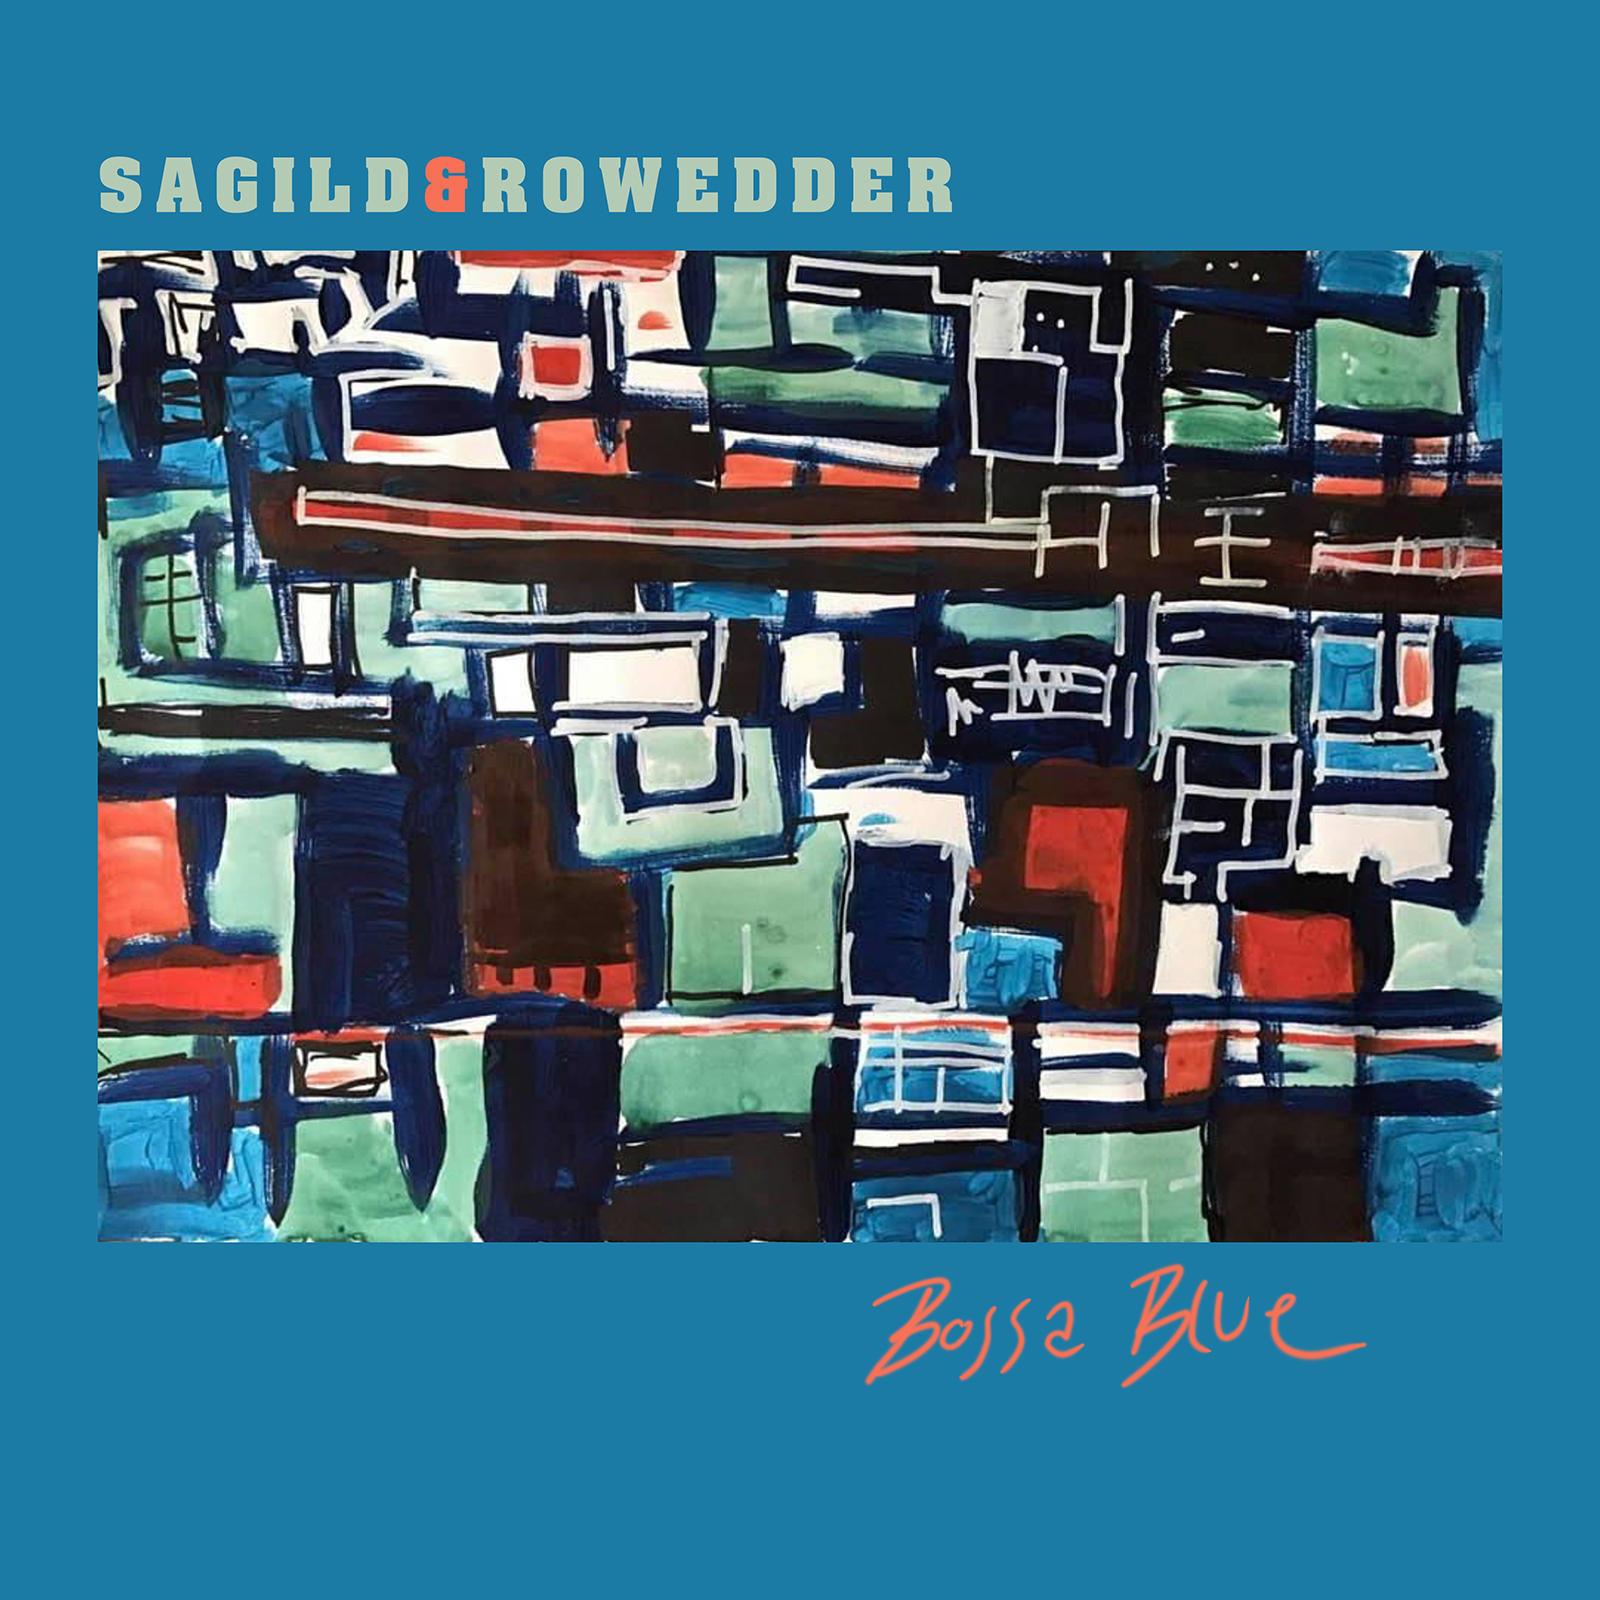 Sagild & Rowedder vinyl cover